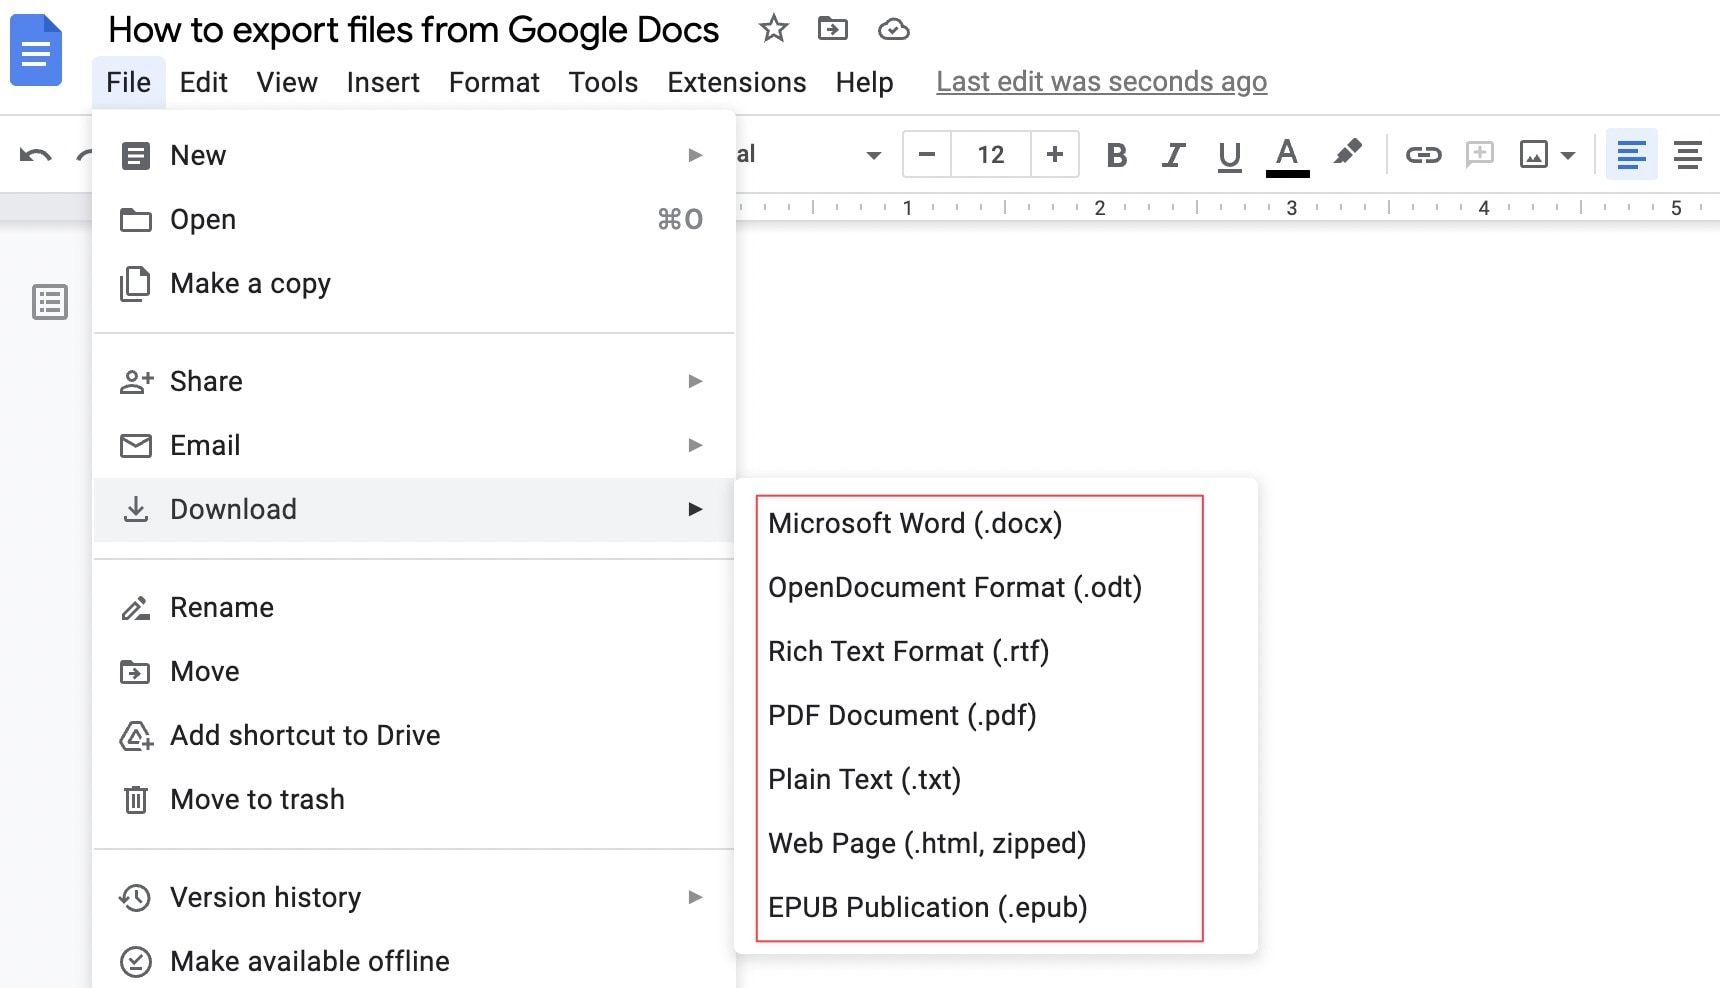 Escolha um formato de arquivo para o arquivo exportado no Google Docs no desktop